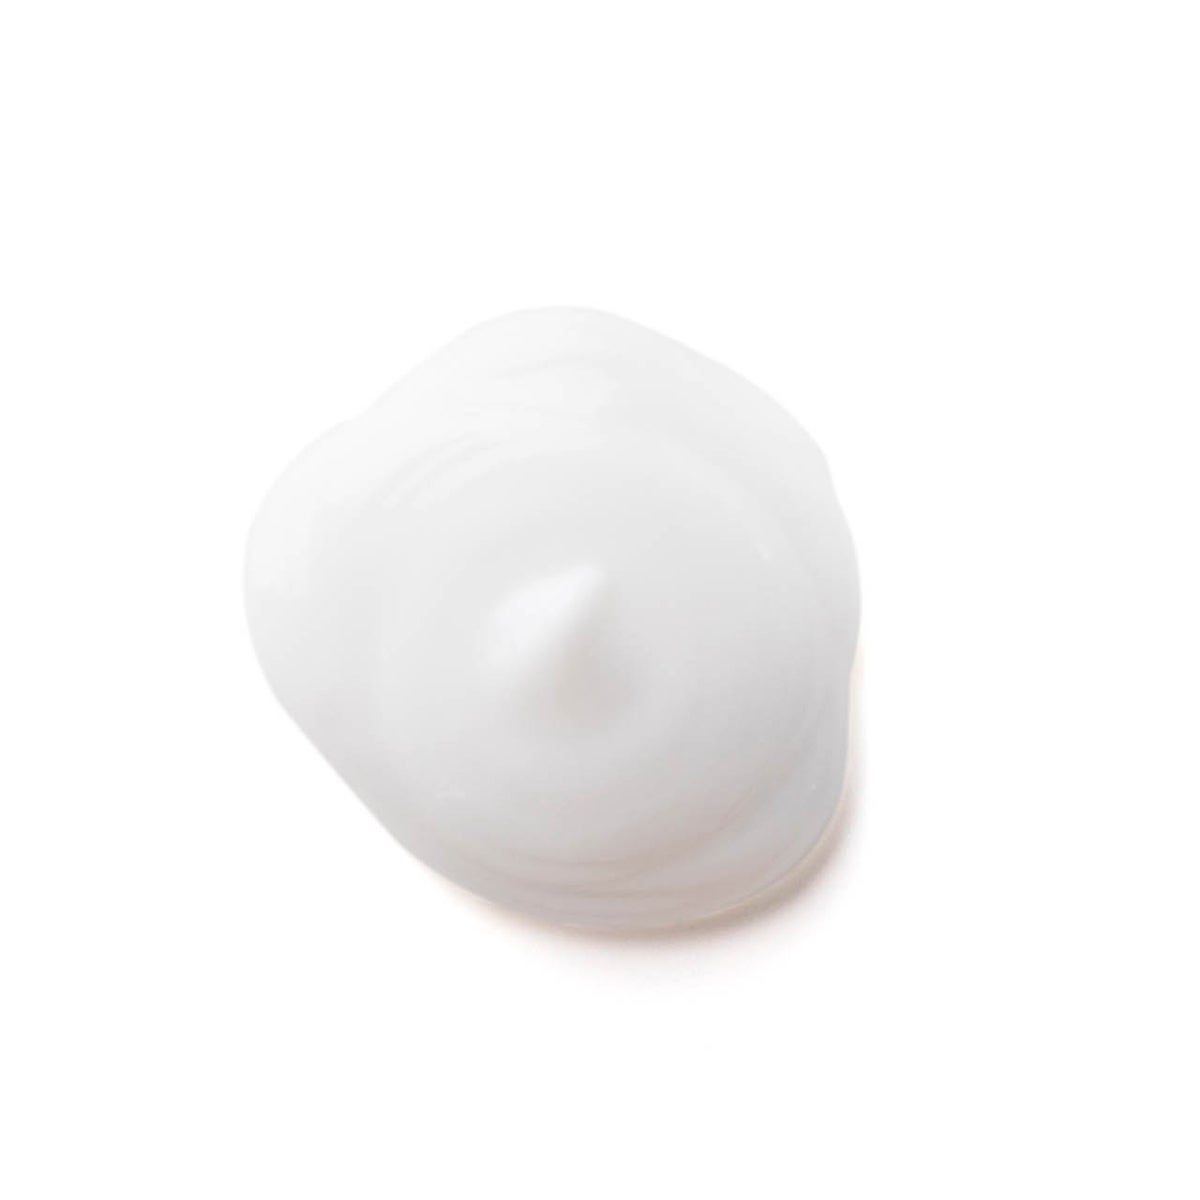 Konsistenzprobe der weißen ageLOC Dermatic Effects Creme auf weißer neutraler Oberfläche.